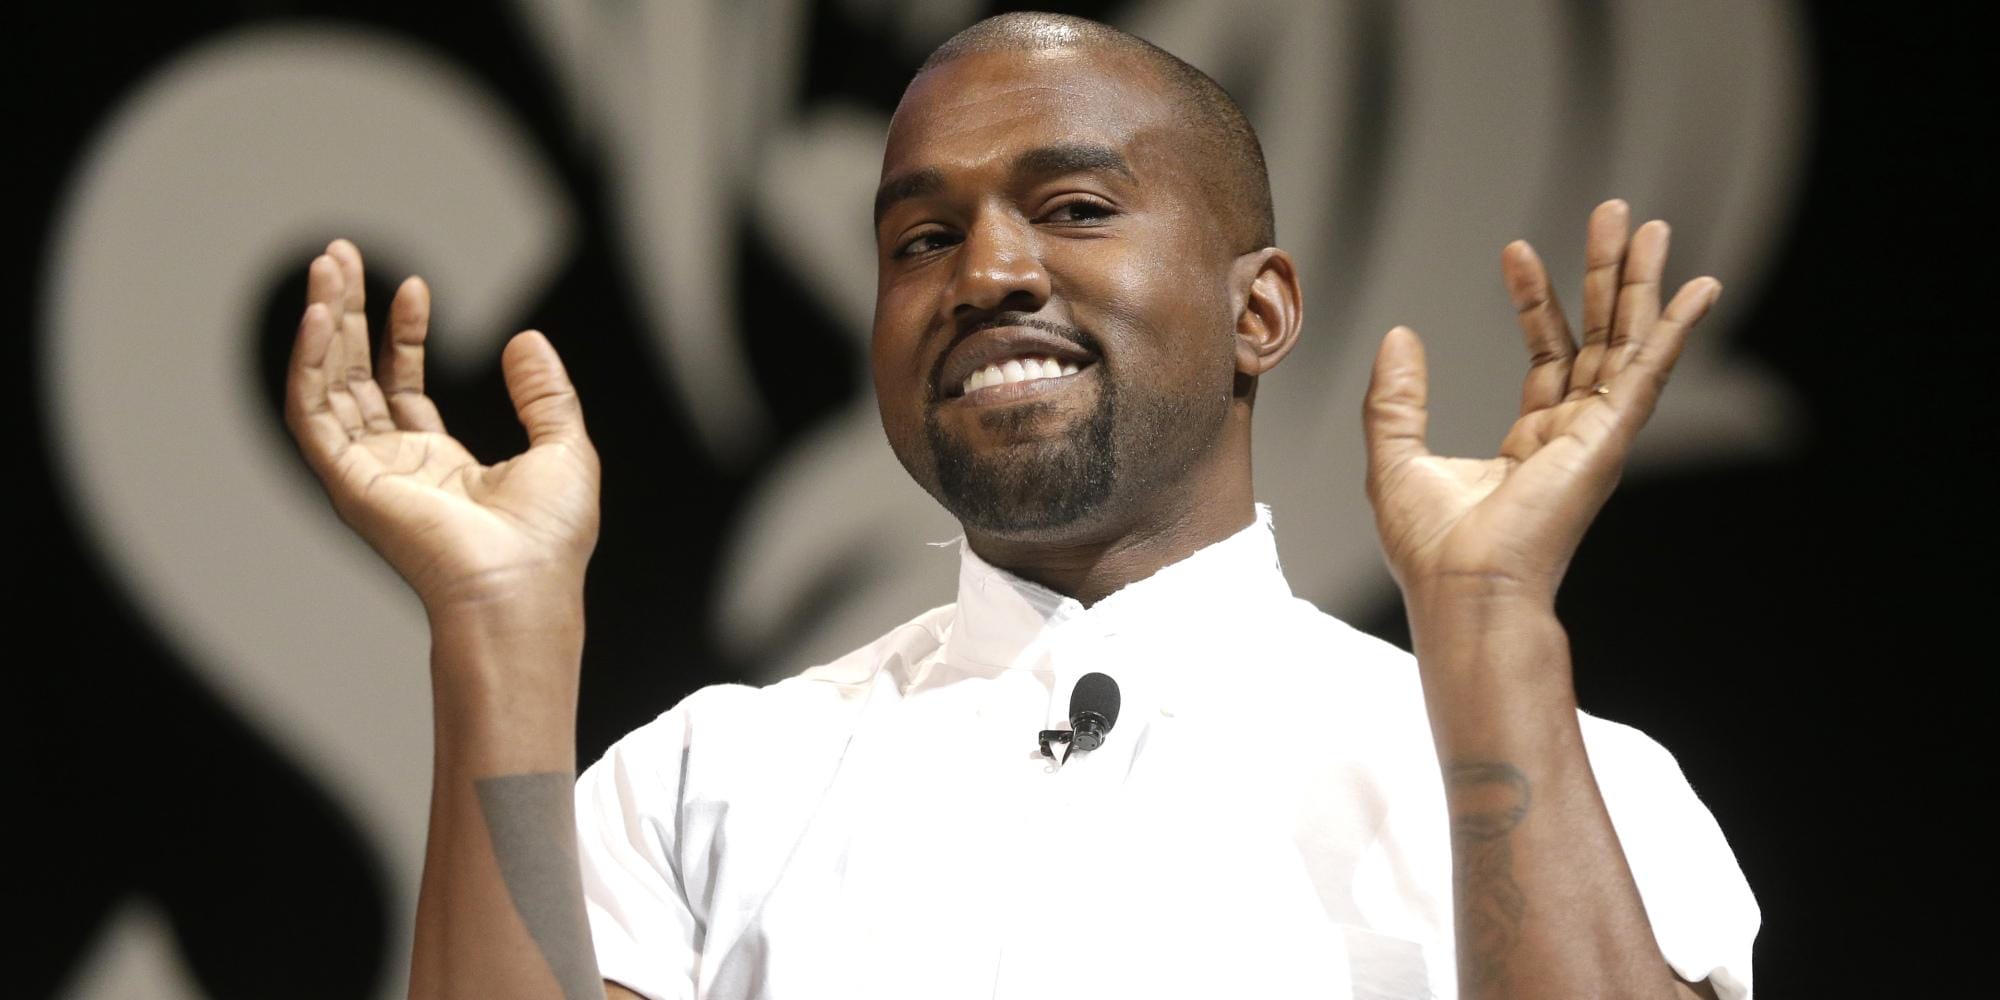 STORY: Le jour où Kanye West a failli avoir une série sur HBO 3